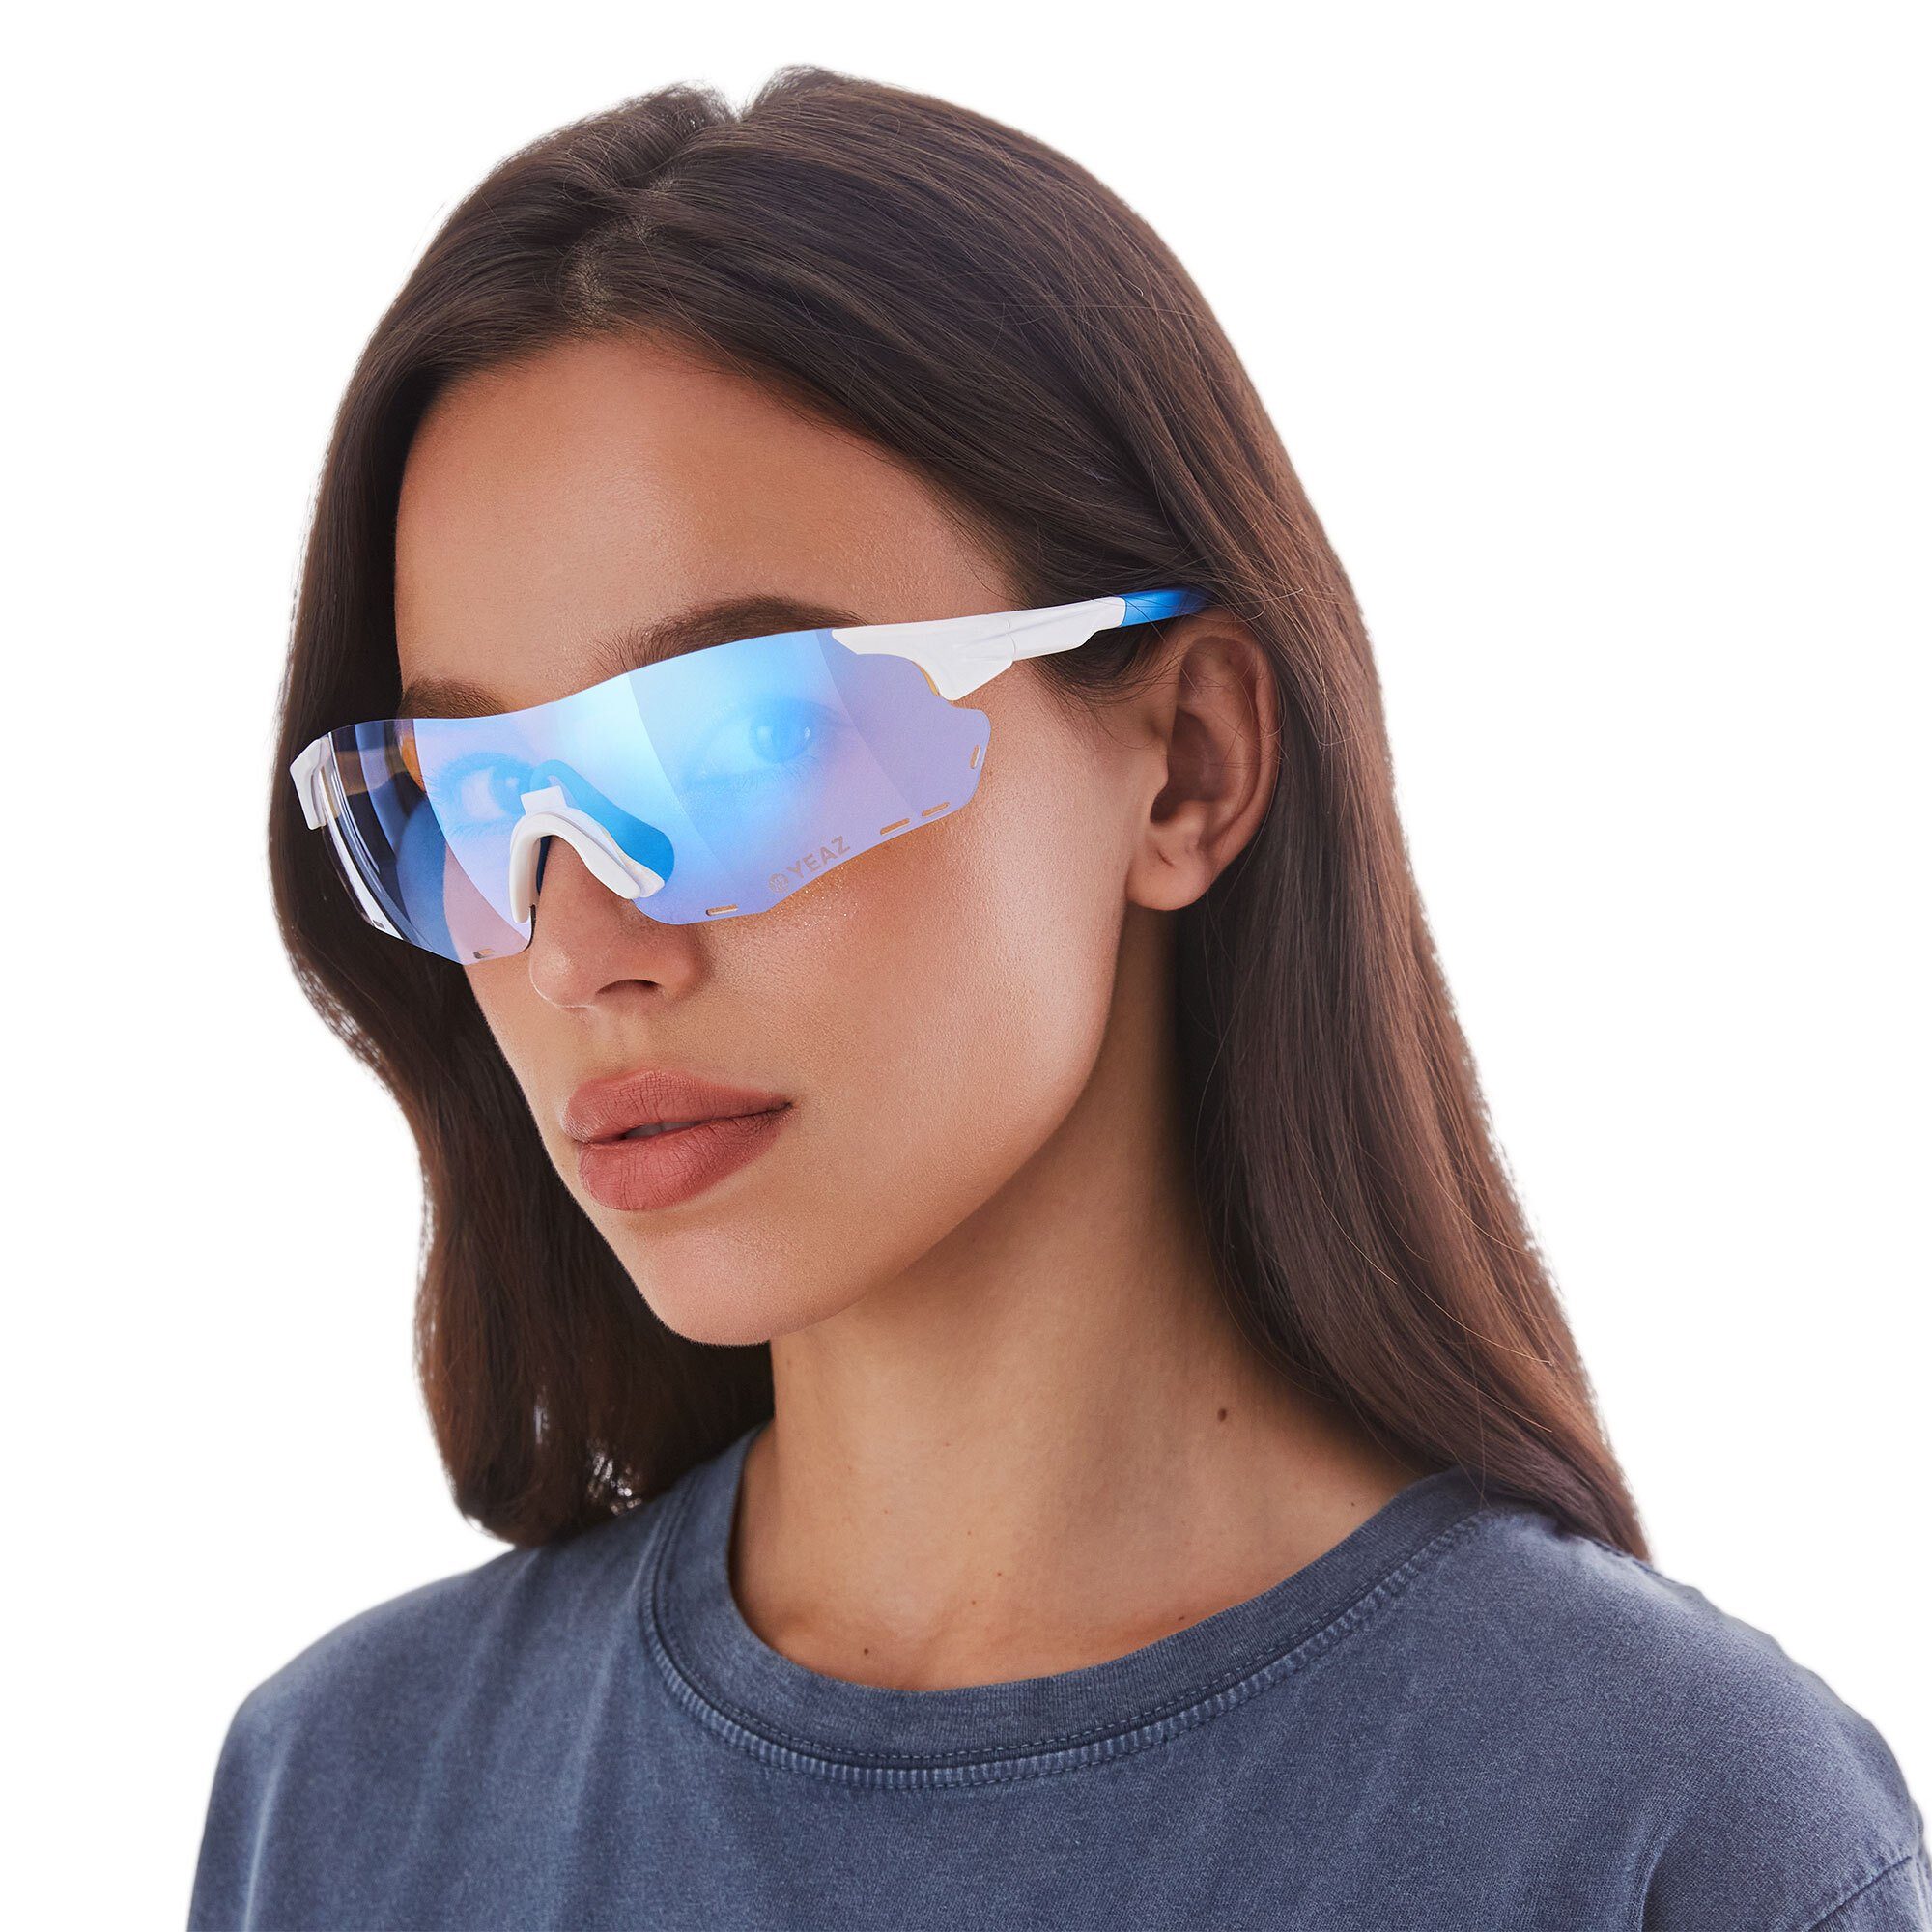 YEAZ Sportbrille blau sport-sonnenbrille / SUNELATION weiß/rot, weiß Sport-Sonnenbrille